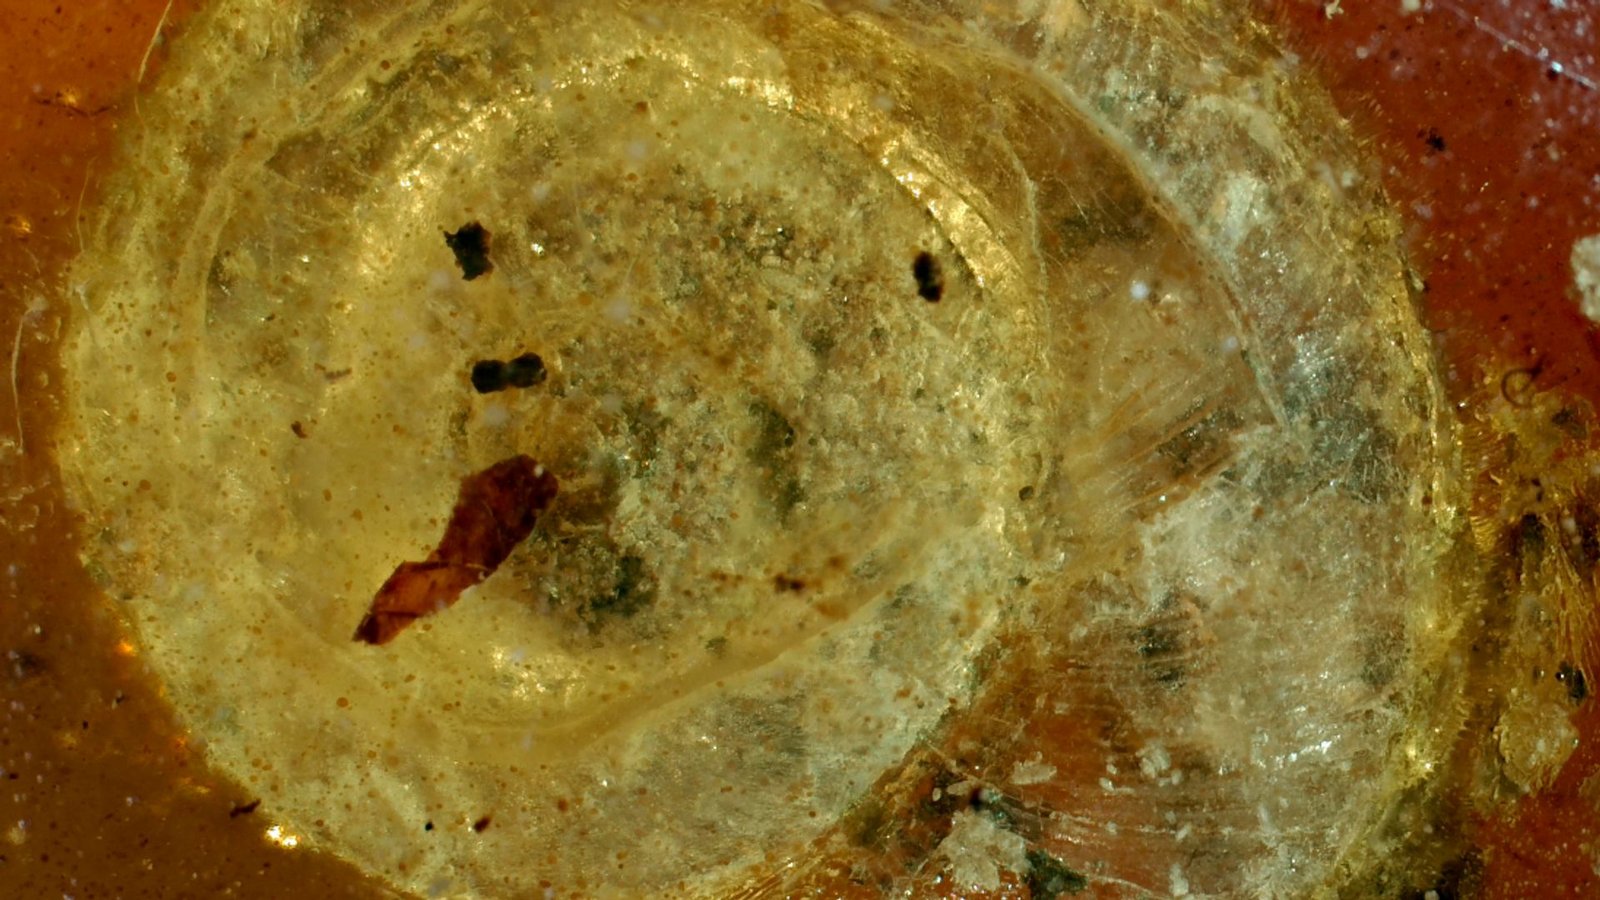 Die fossile Schnecke wurde auf den Namen "Archaeocyclotus brevivillosus" getauft. Besonders auffällig ist ihr mit kurzen und borstigen Haaren bedecktes Haus.Foto: -/Naturhistorisches Museum Colmar/dpa